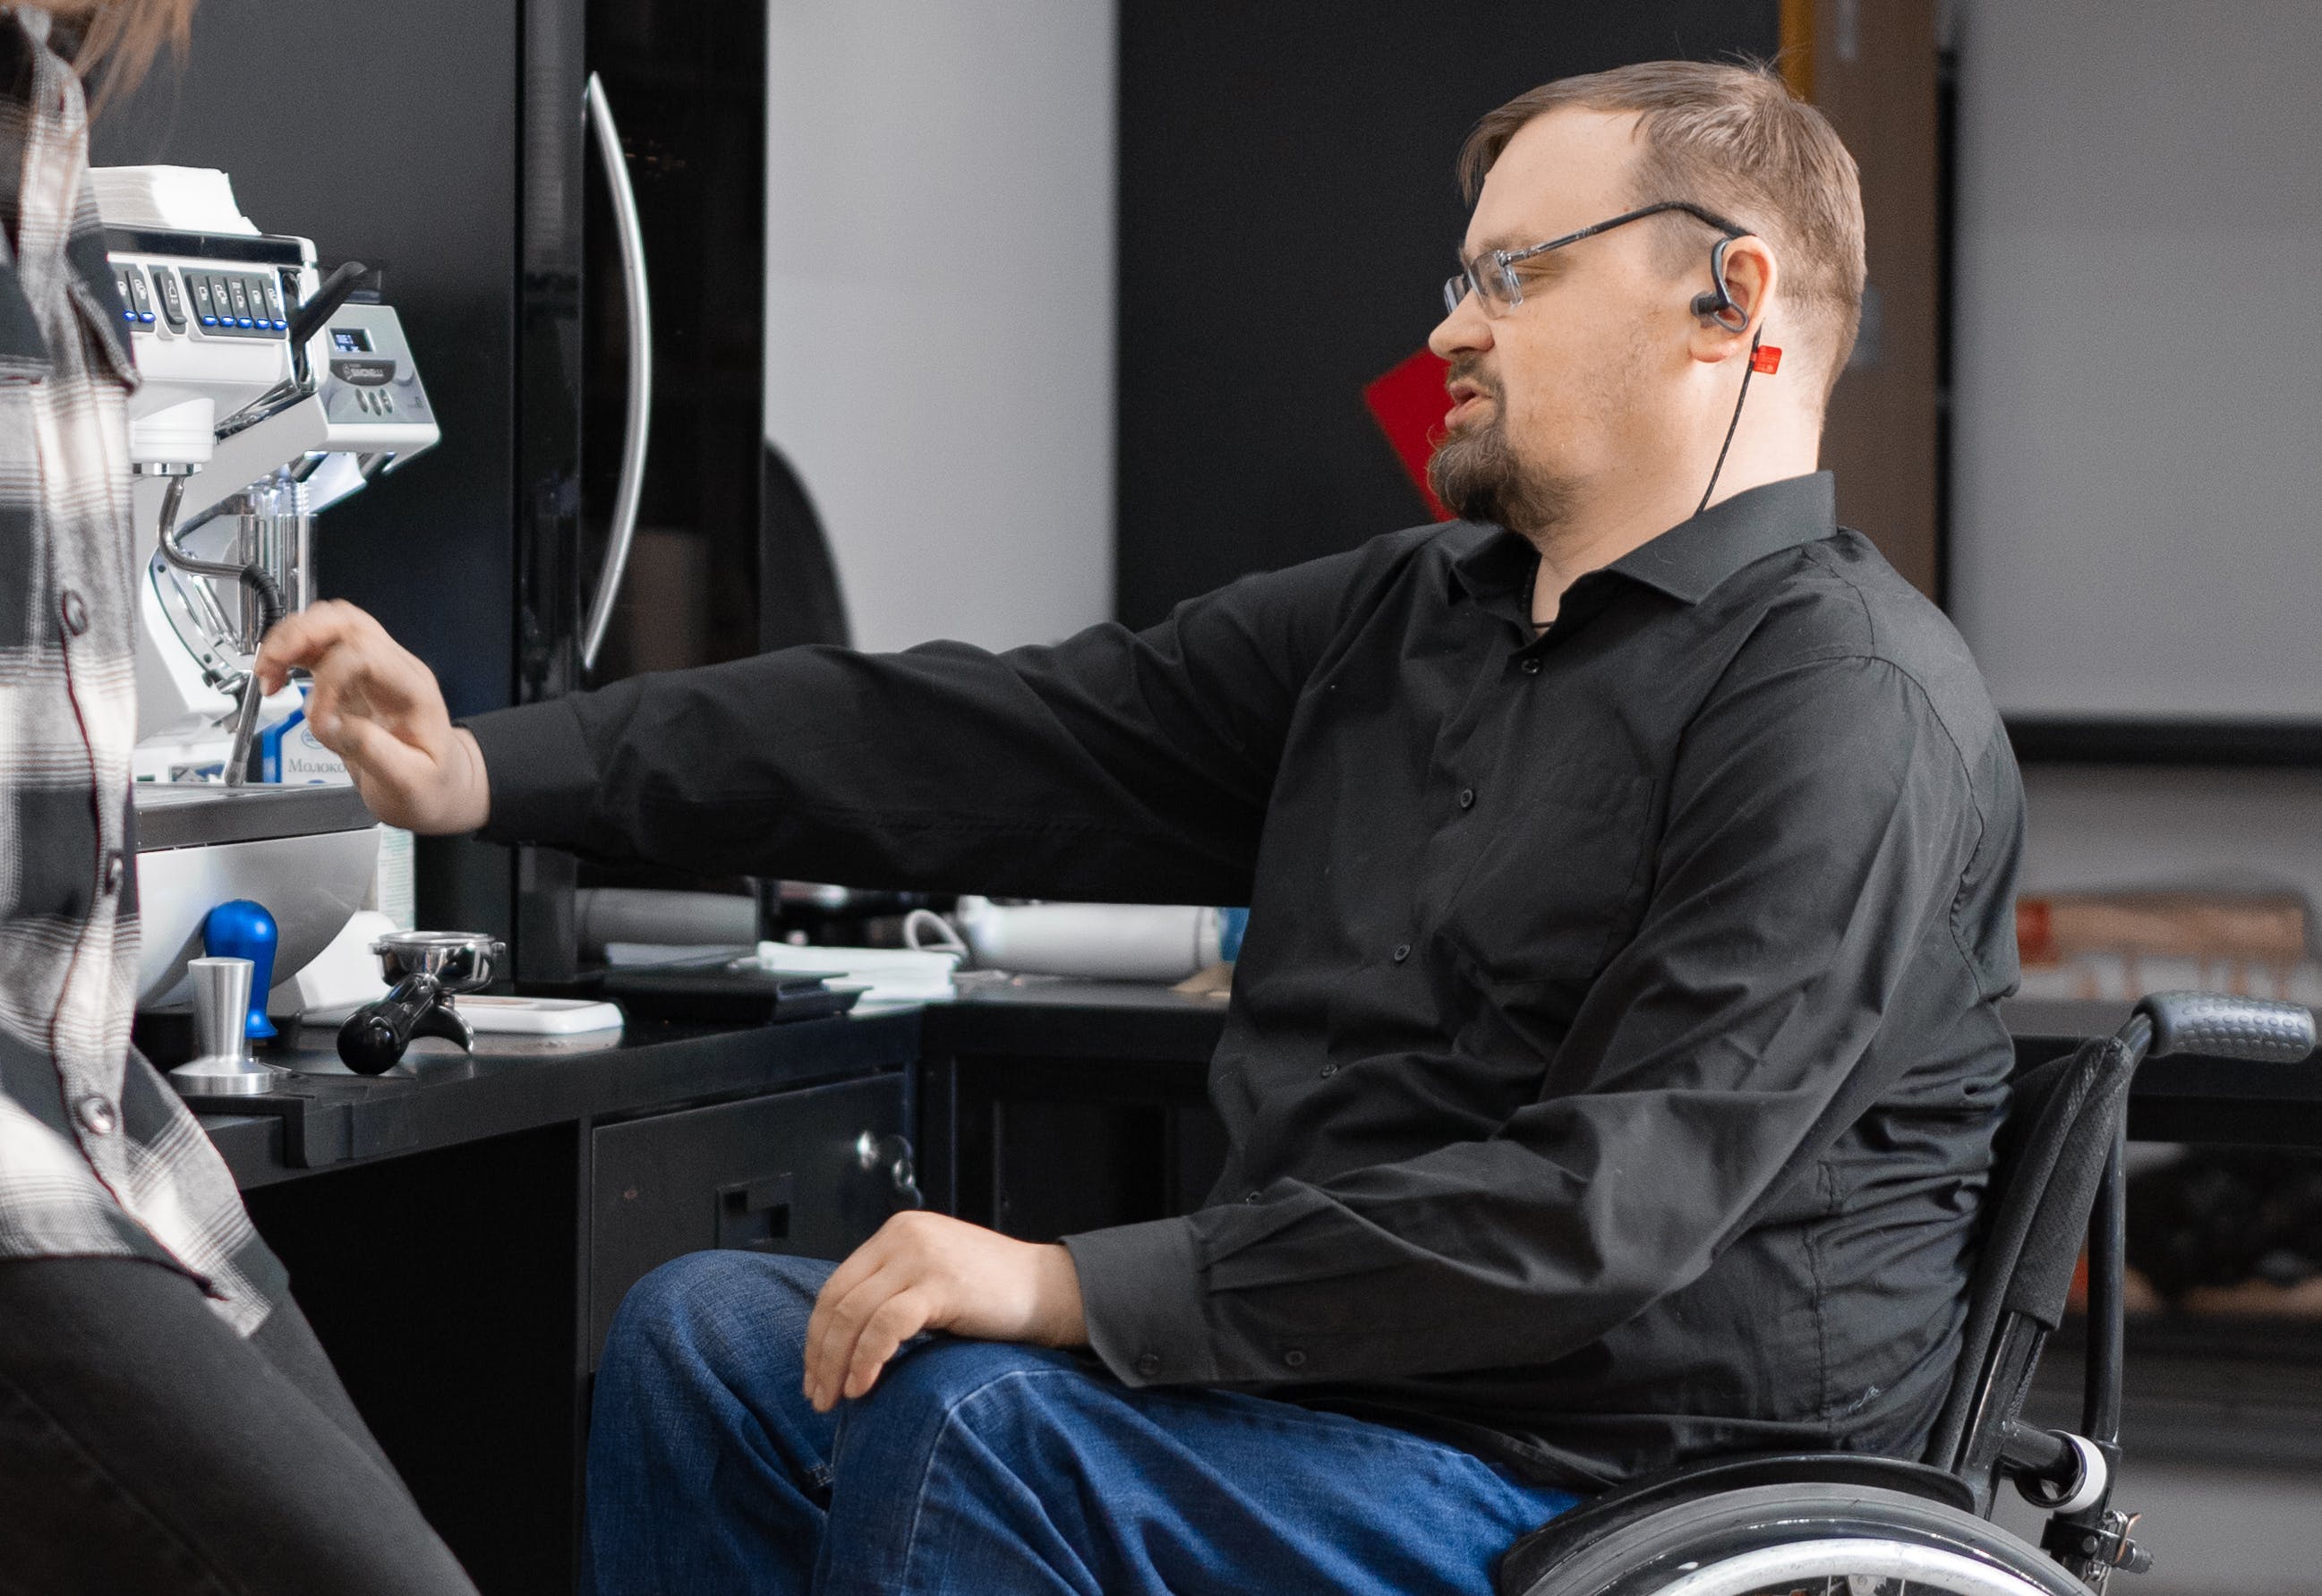 Persona amb cadira de rodes manipulant una màquina. Font: Pexels - Mikhail Nilov